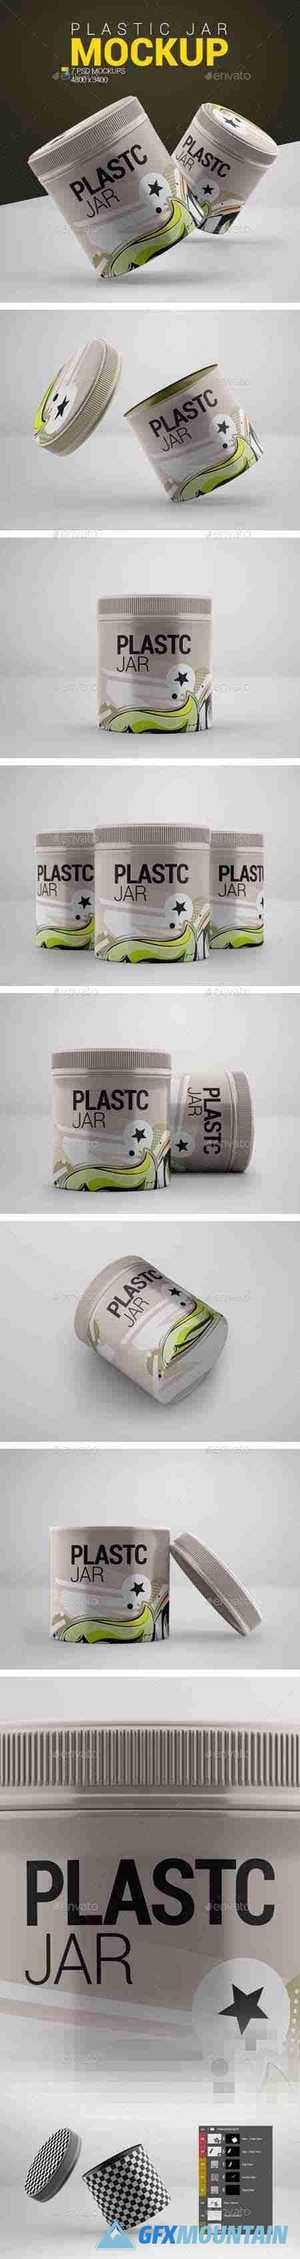 Plastic Jar Mockup 23991692